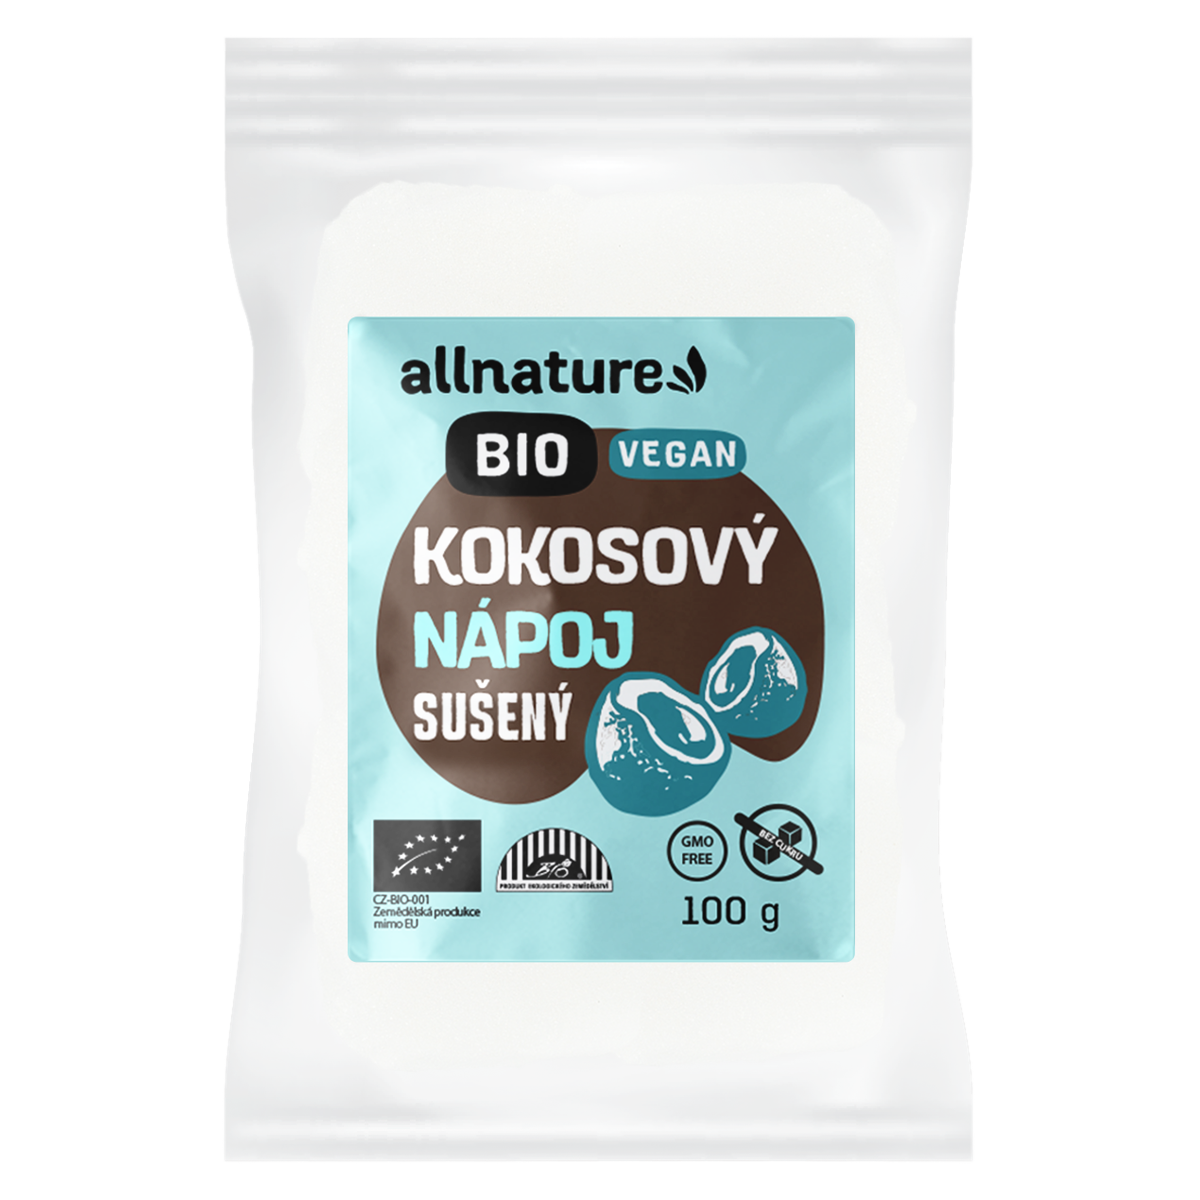 Allnature Kokosový nápoj sušený BIO - 100 g - bez přidaného cukru a pro vegany Allnature